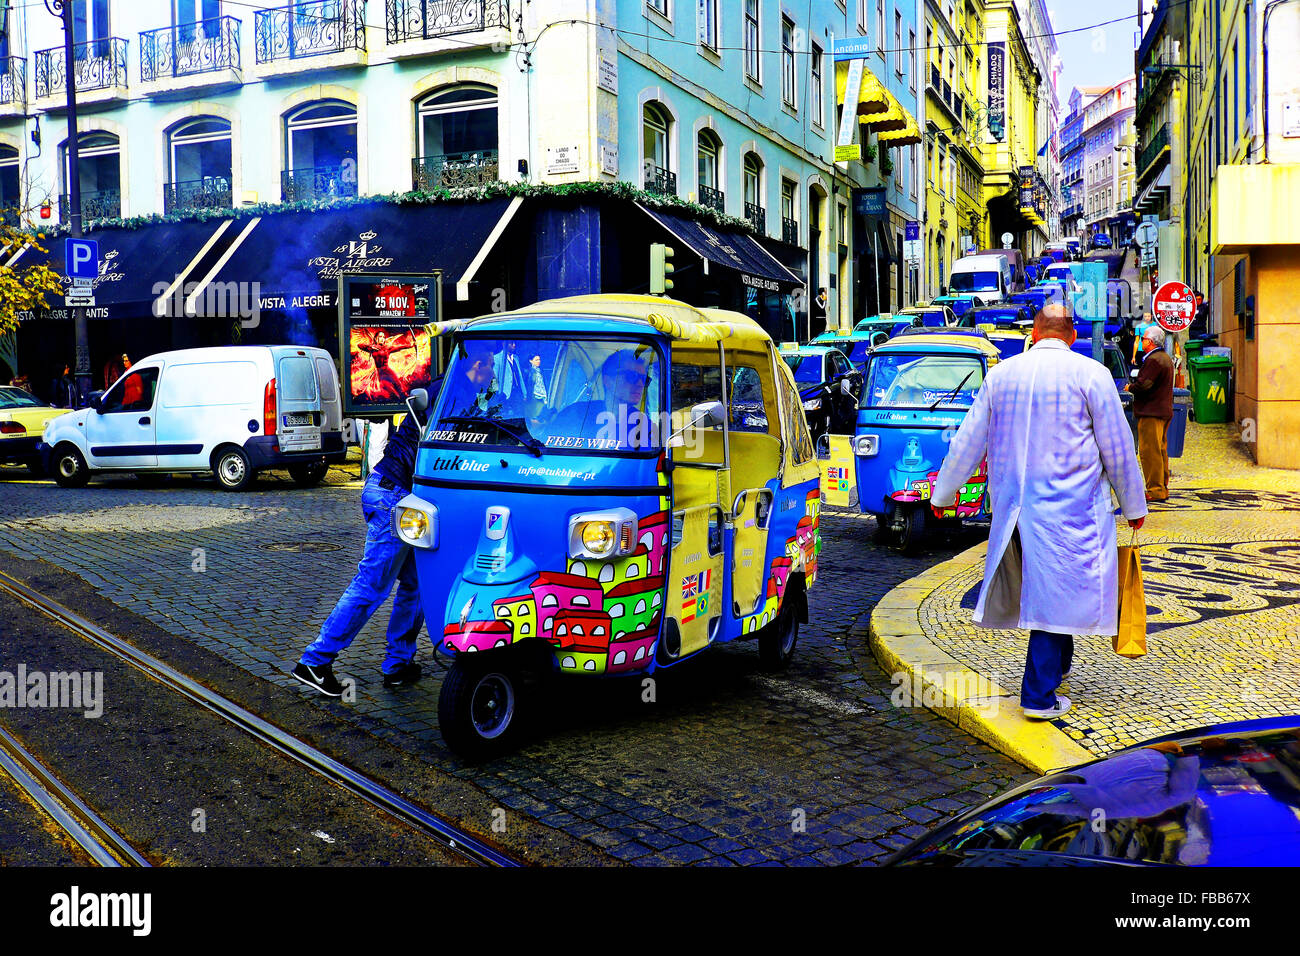 Portugal Lisbon tourist tuk tuk taxi service Stock Photo